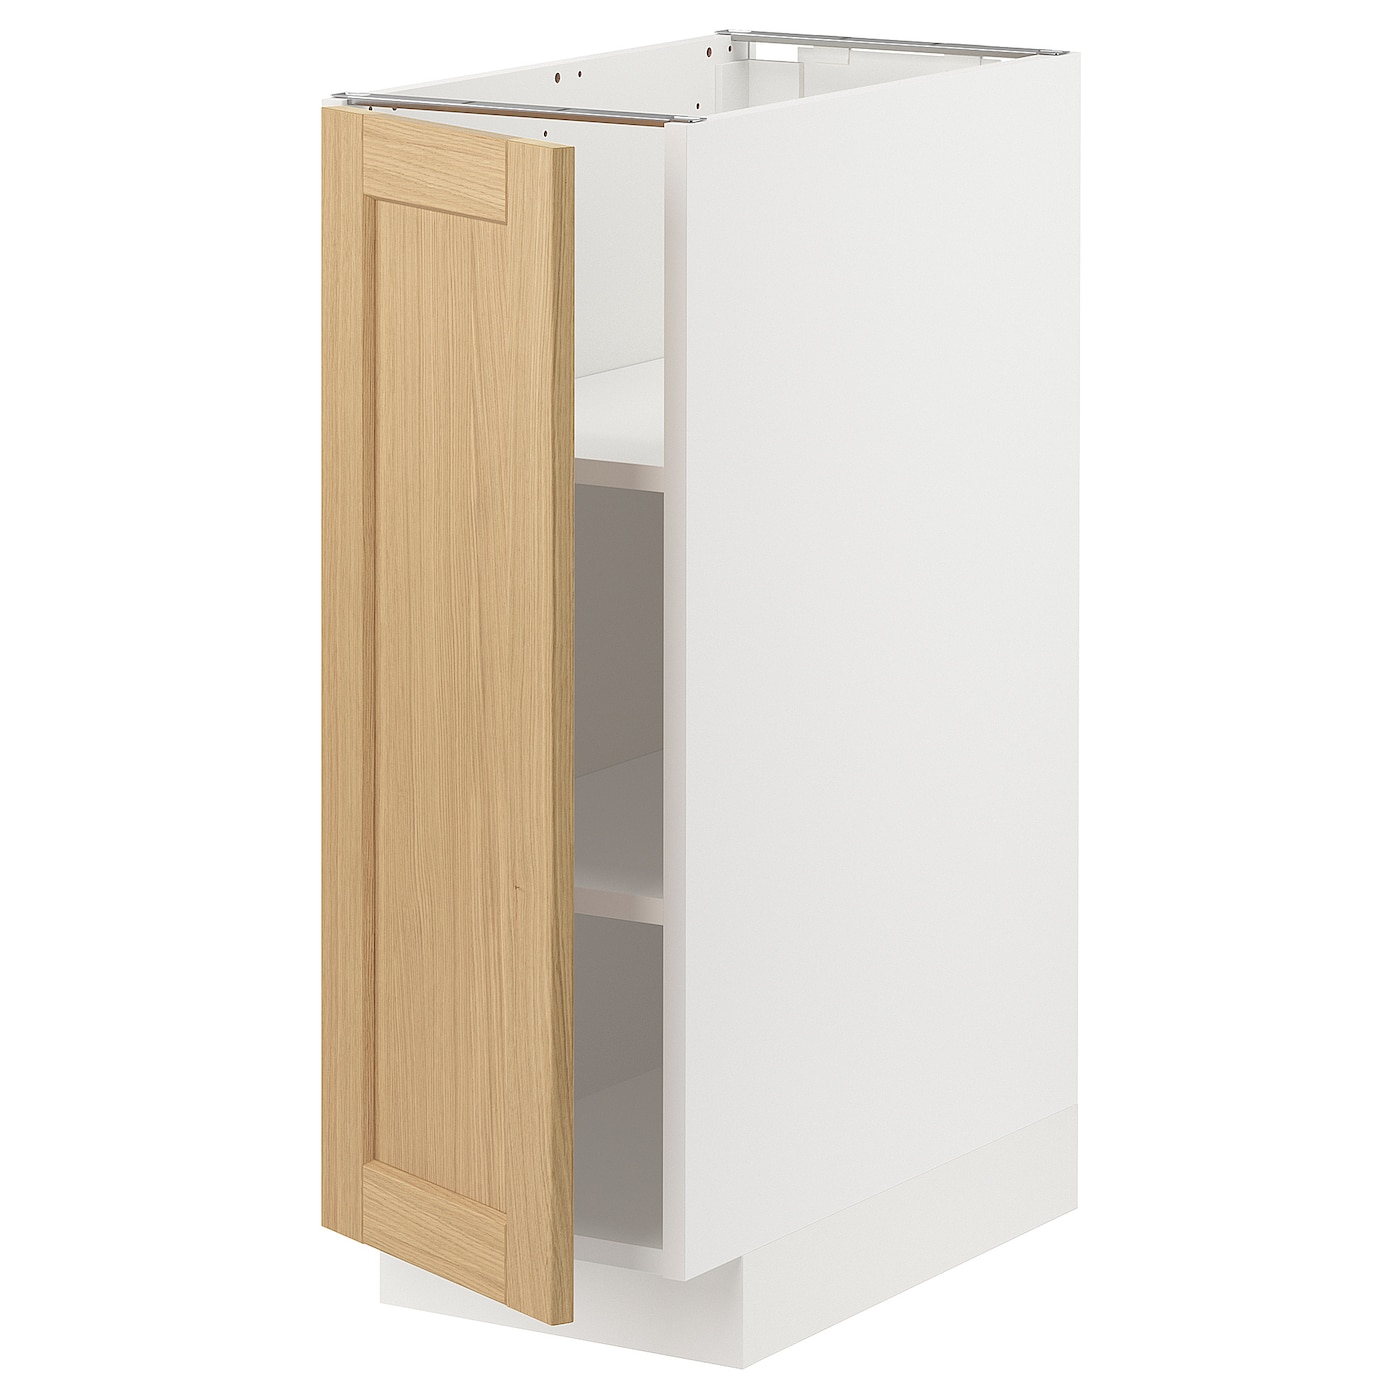 Напольный шкаф - METOD IKEA/ МЕТОД ИКЕА,  30х60 см, белый/под беленый дуб